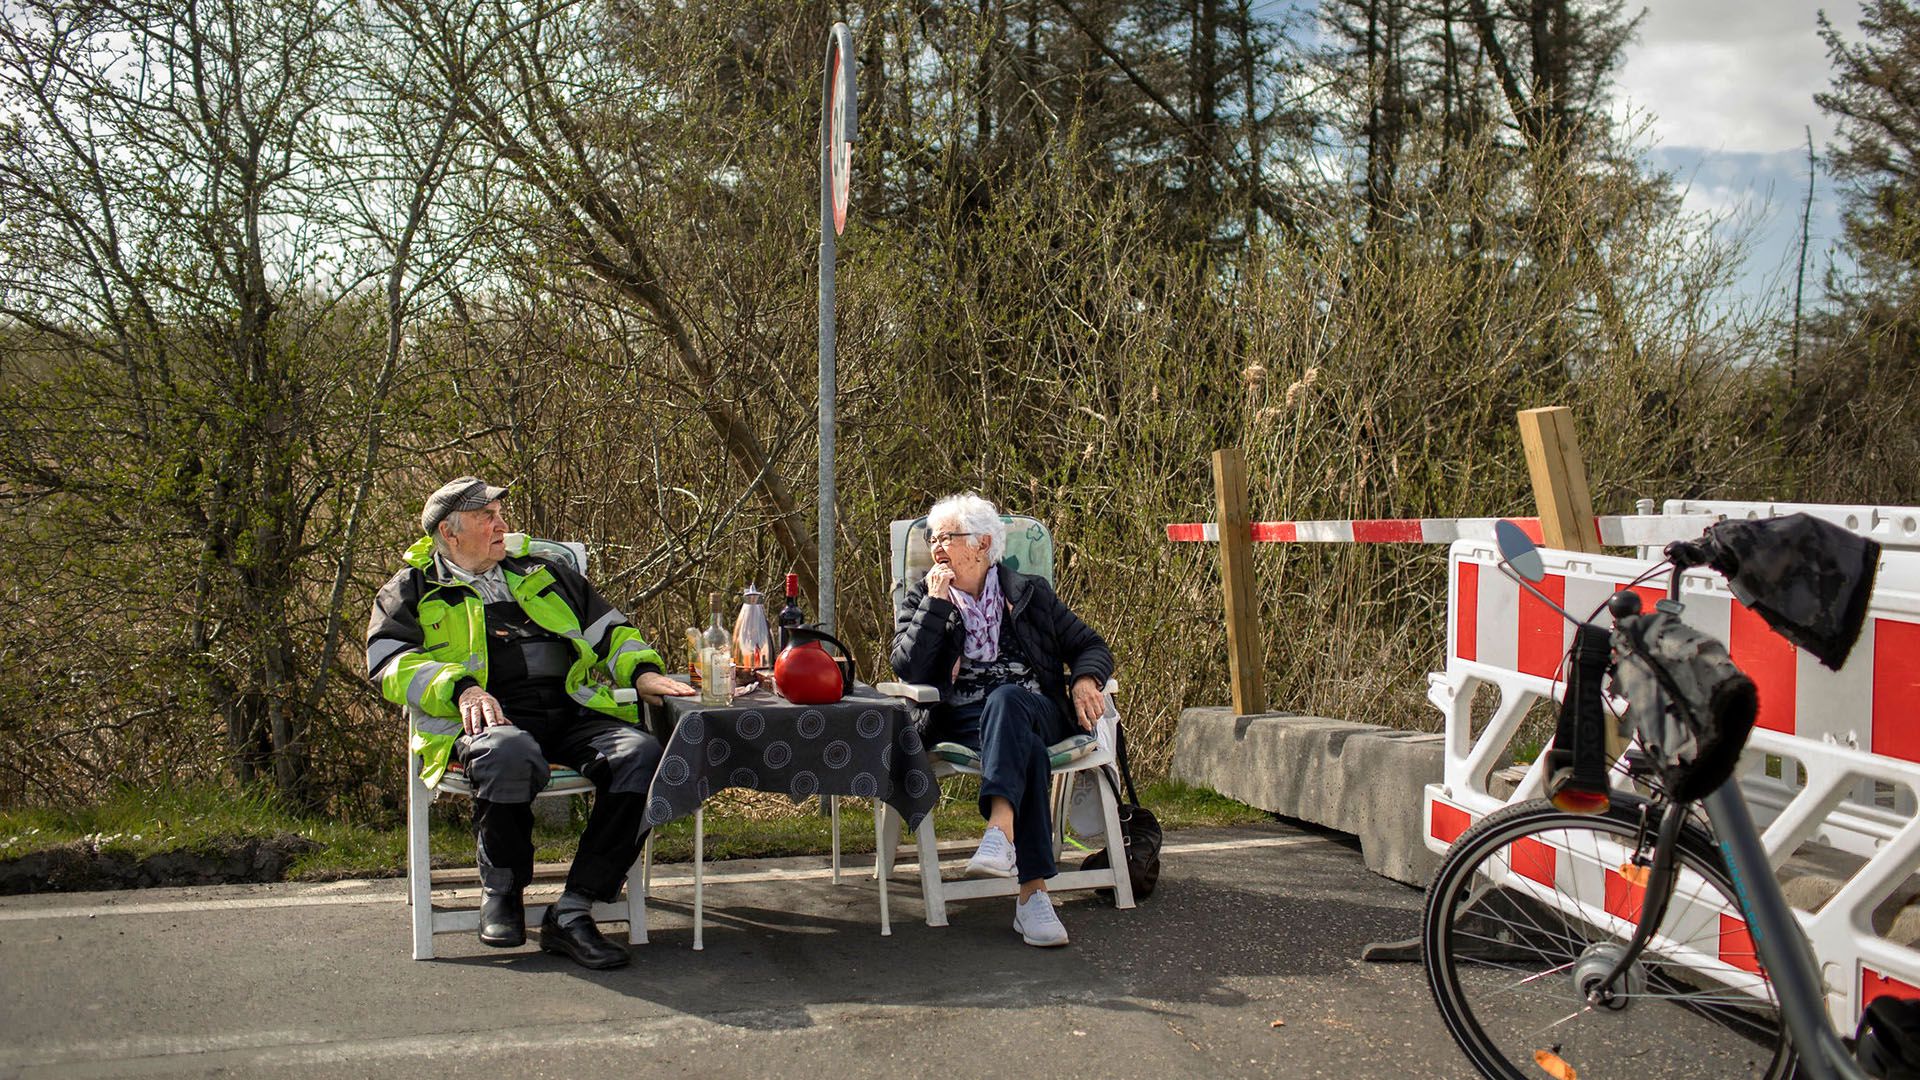 Karsten Tüchsen Hansen e Inga Rasmussen, mantienen vivo su amor a pesar del cierre de la frontera entre sus países, reuniéndose en el cruce fronterizo de Mollehusvej, entre Dinamarca y Alemania, el 16 de abril de 2020. (Emile Ducke/The New York Times)